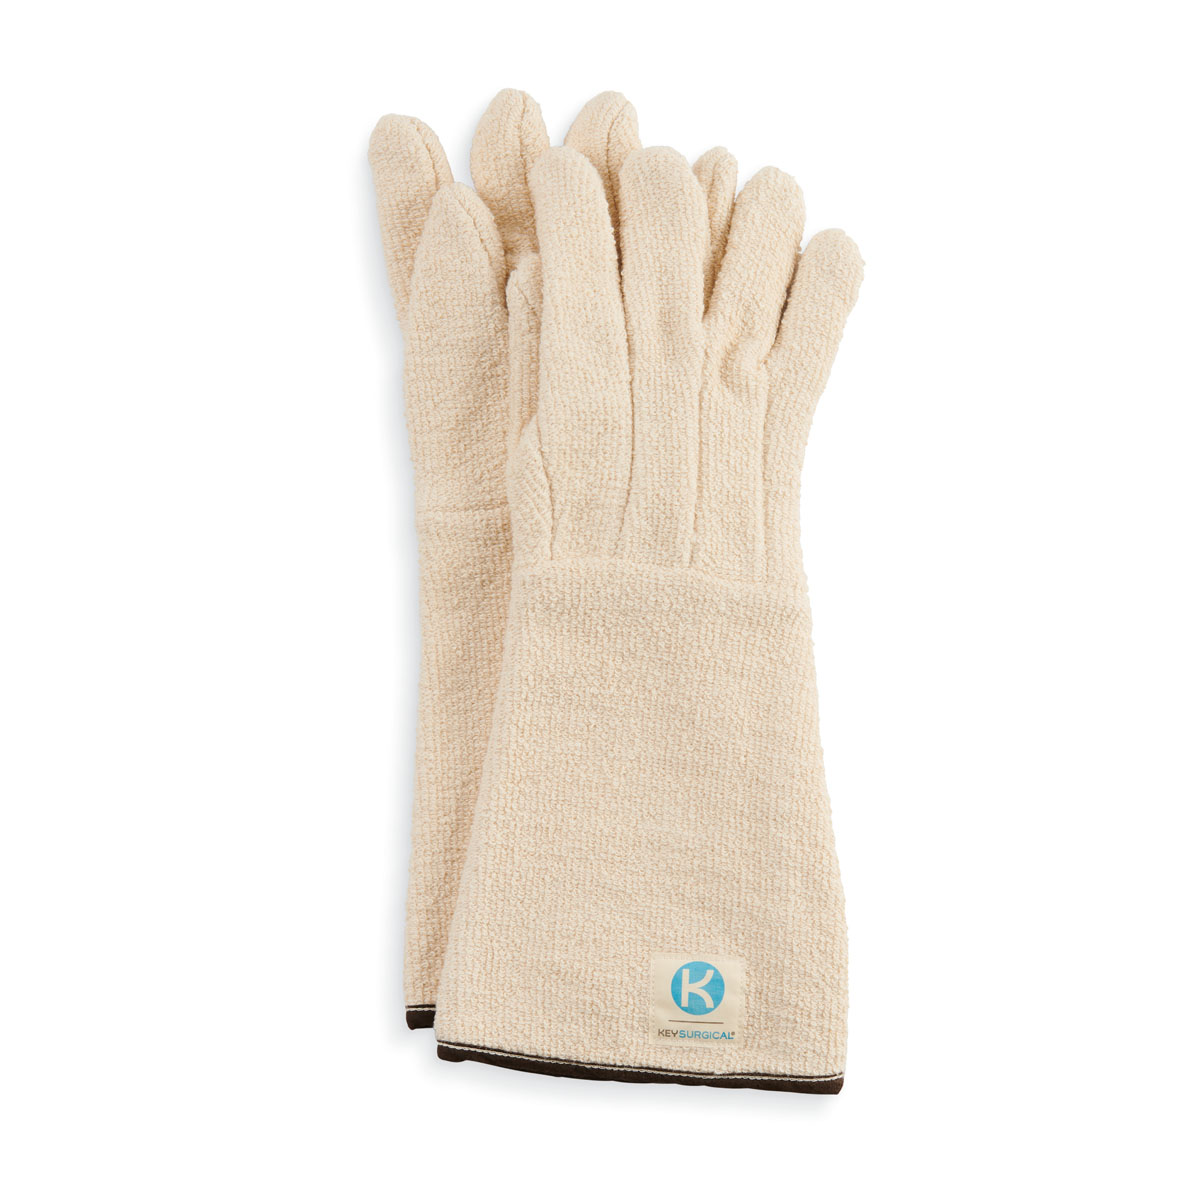 Steriliser Gloves Image